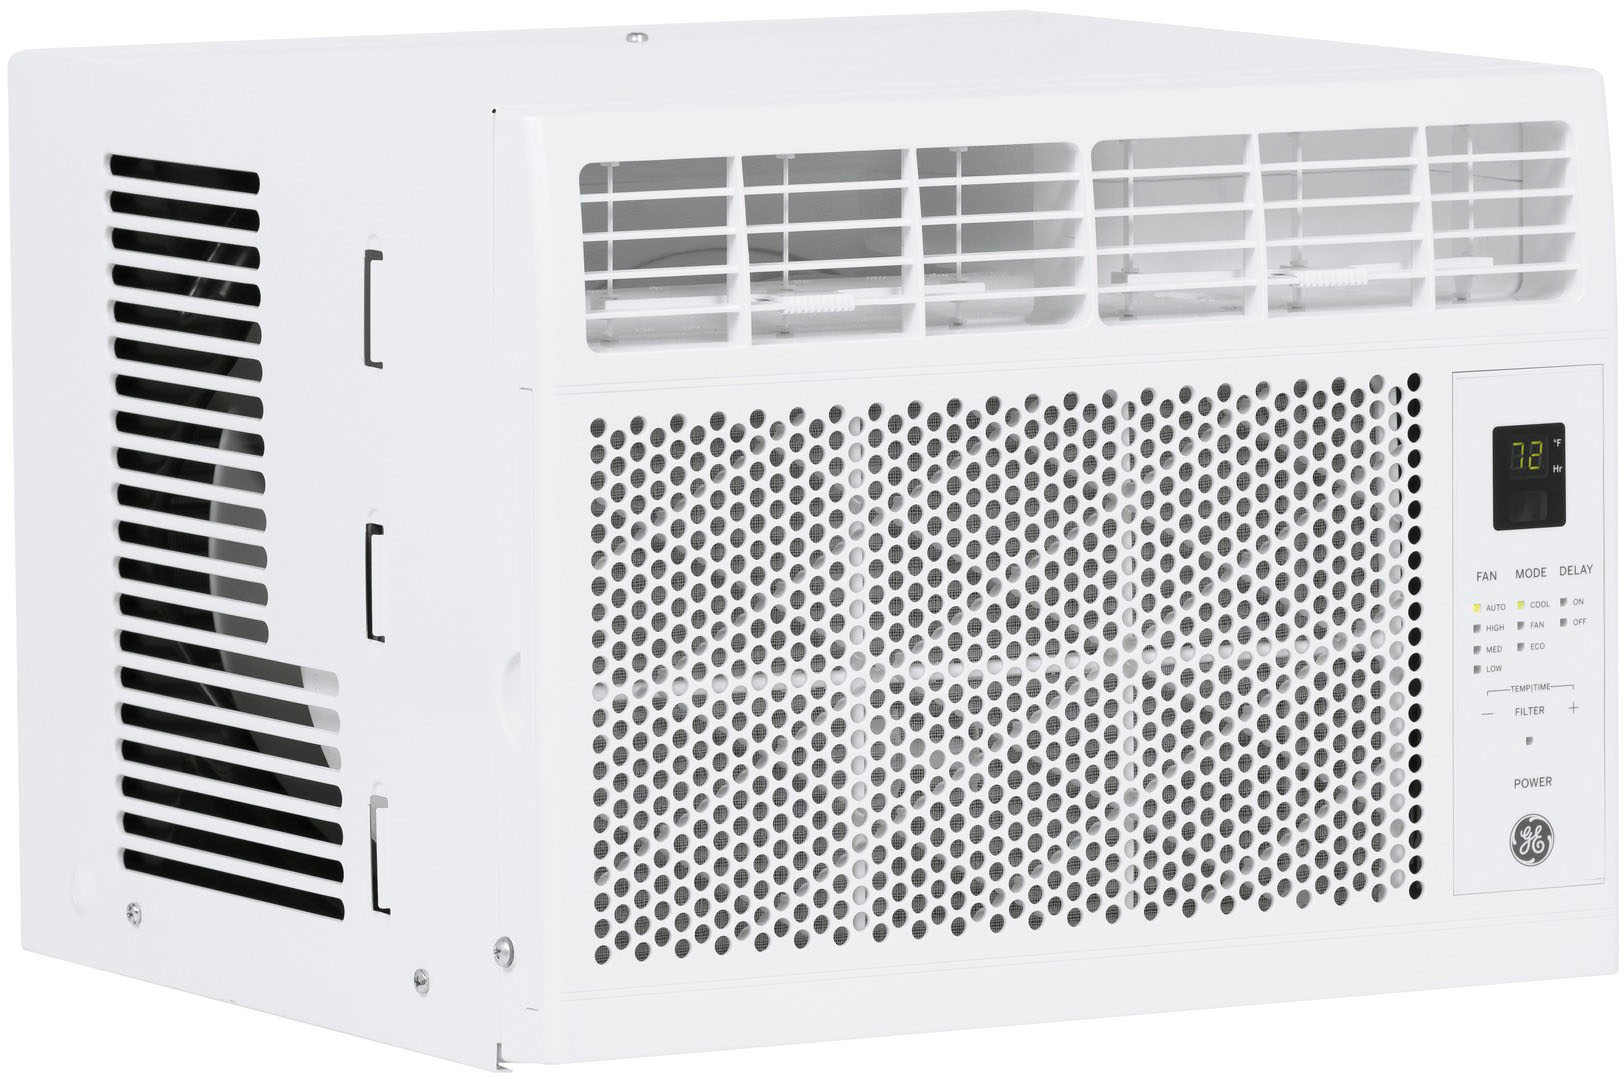 air conditioner 250 square feet